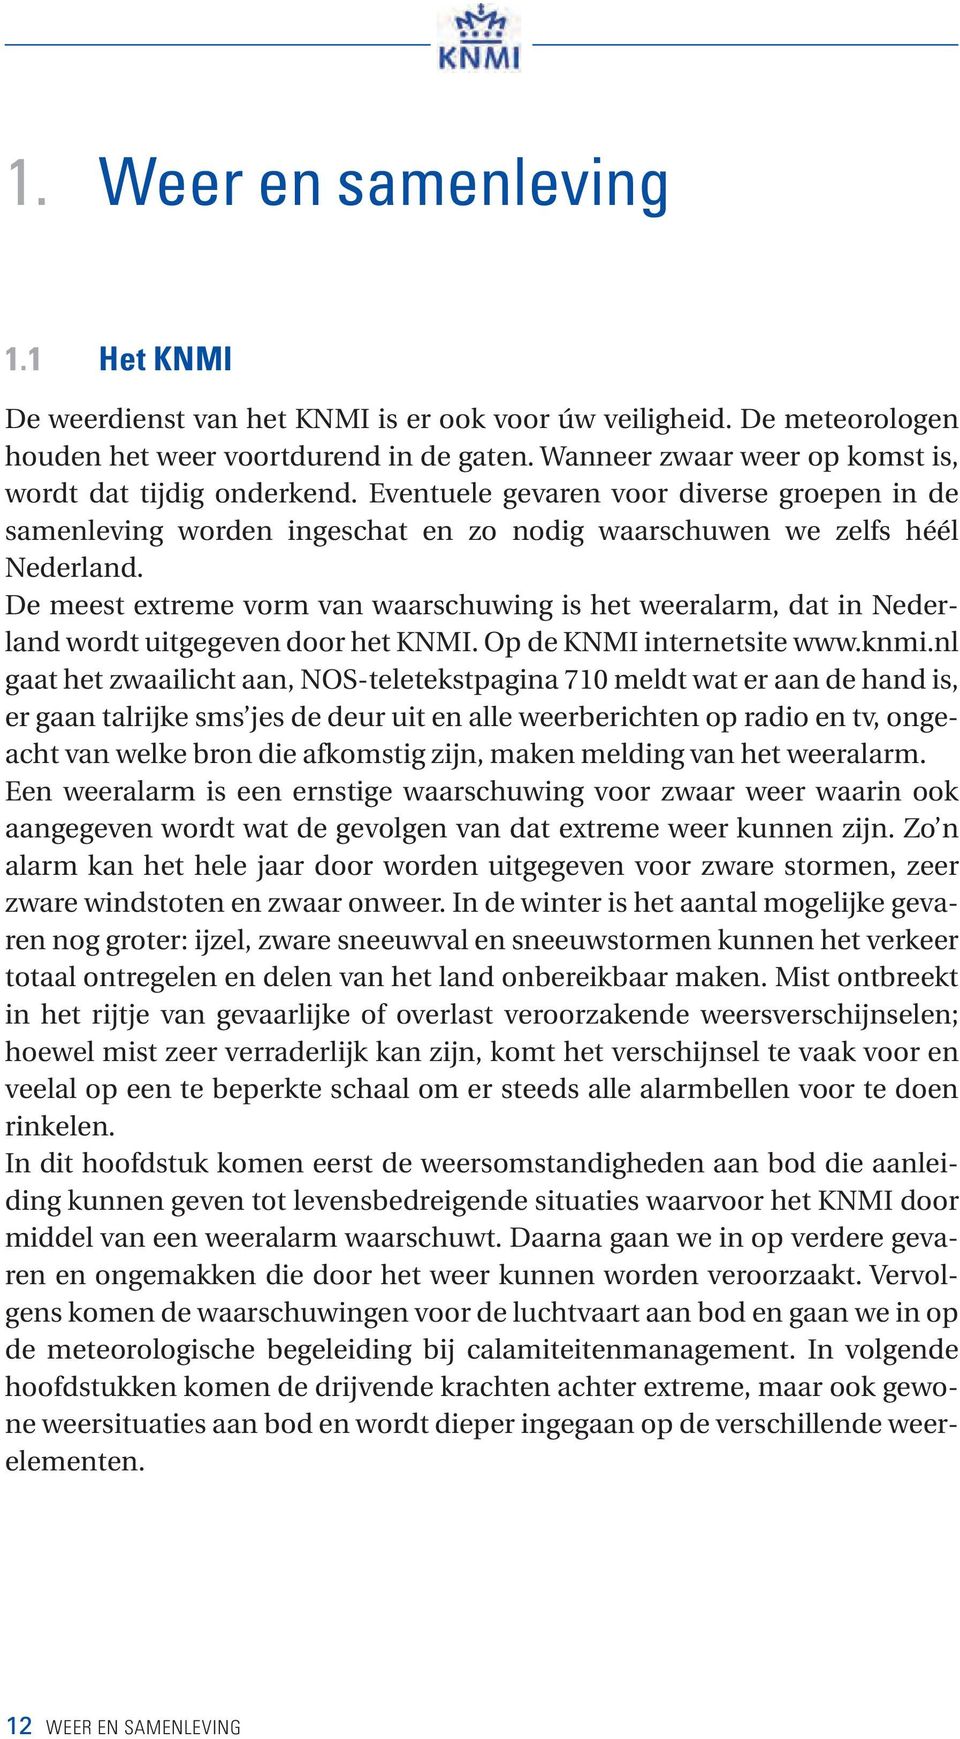 De meest extreme vorm van waarschuwing is het weeralarm, dat in Nederland wordt uitgegeven door het KNMI. Op de KNMI internetsite www.knmi.